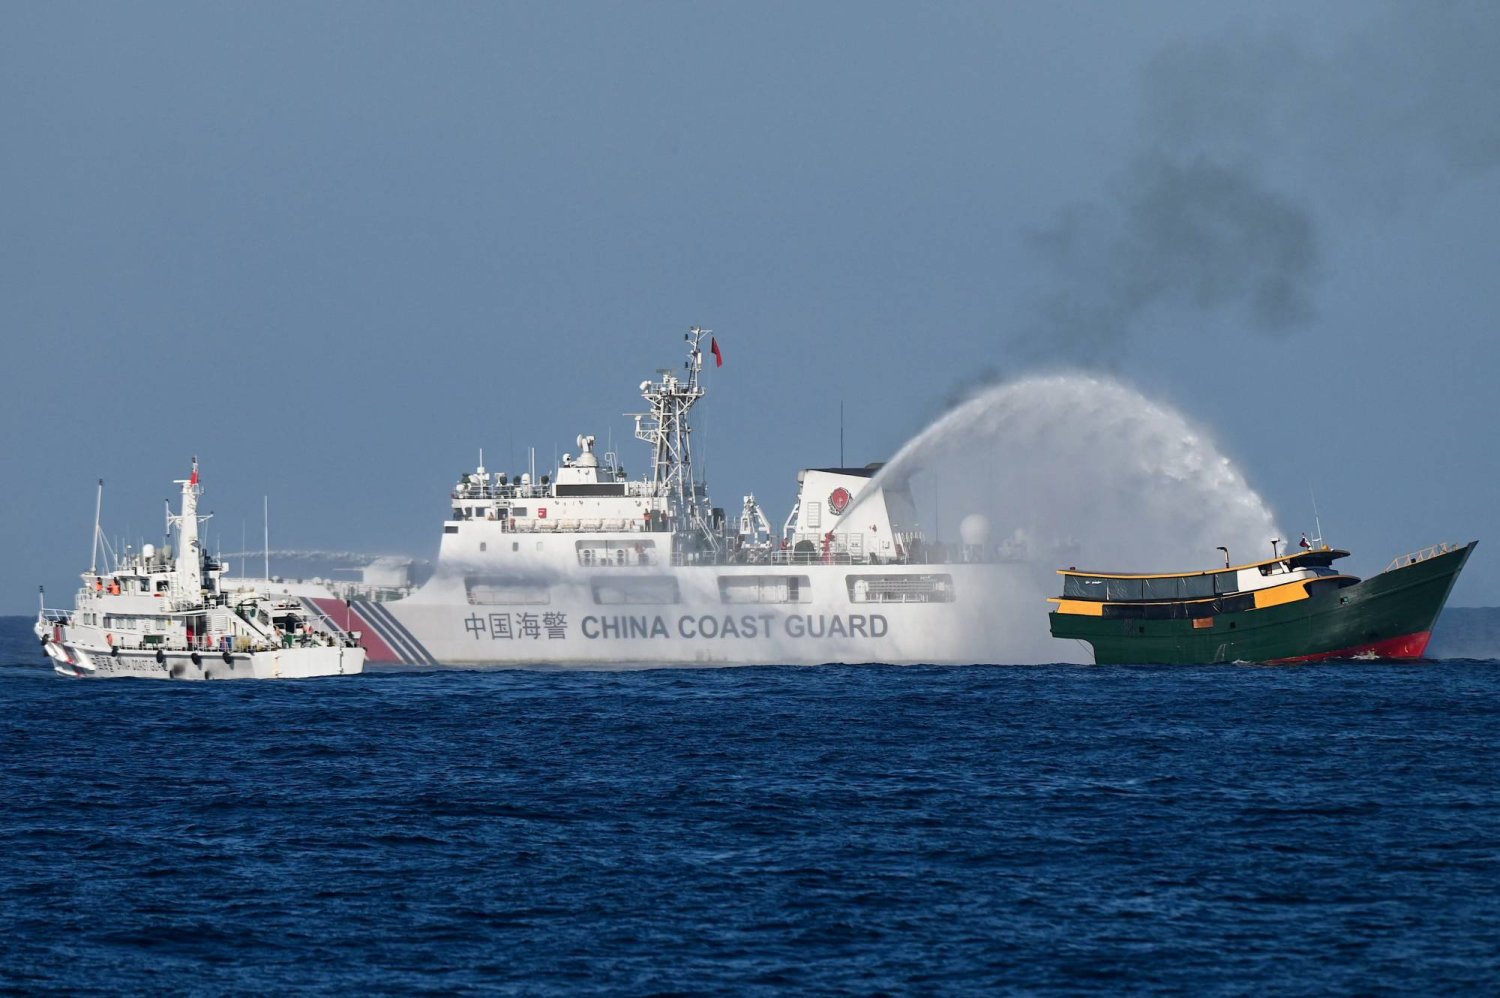 سفن خفر السواحل الصينية وهي توجه خراطيم المياه تجاه مركب تابع للجيش الفنزويلى في المياه المتنازع عليها ببحر الصين الجنوبي (أ.ف.ب)